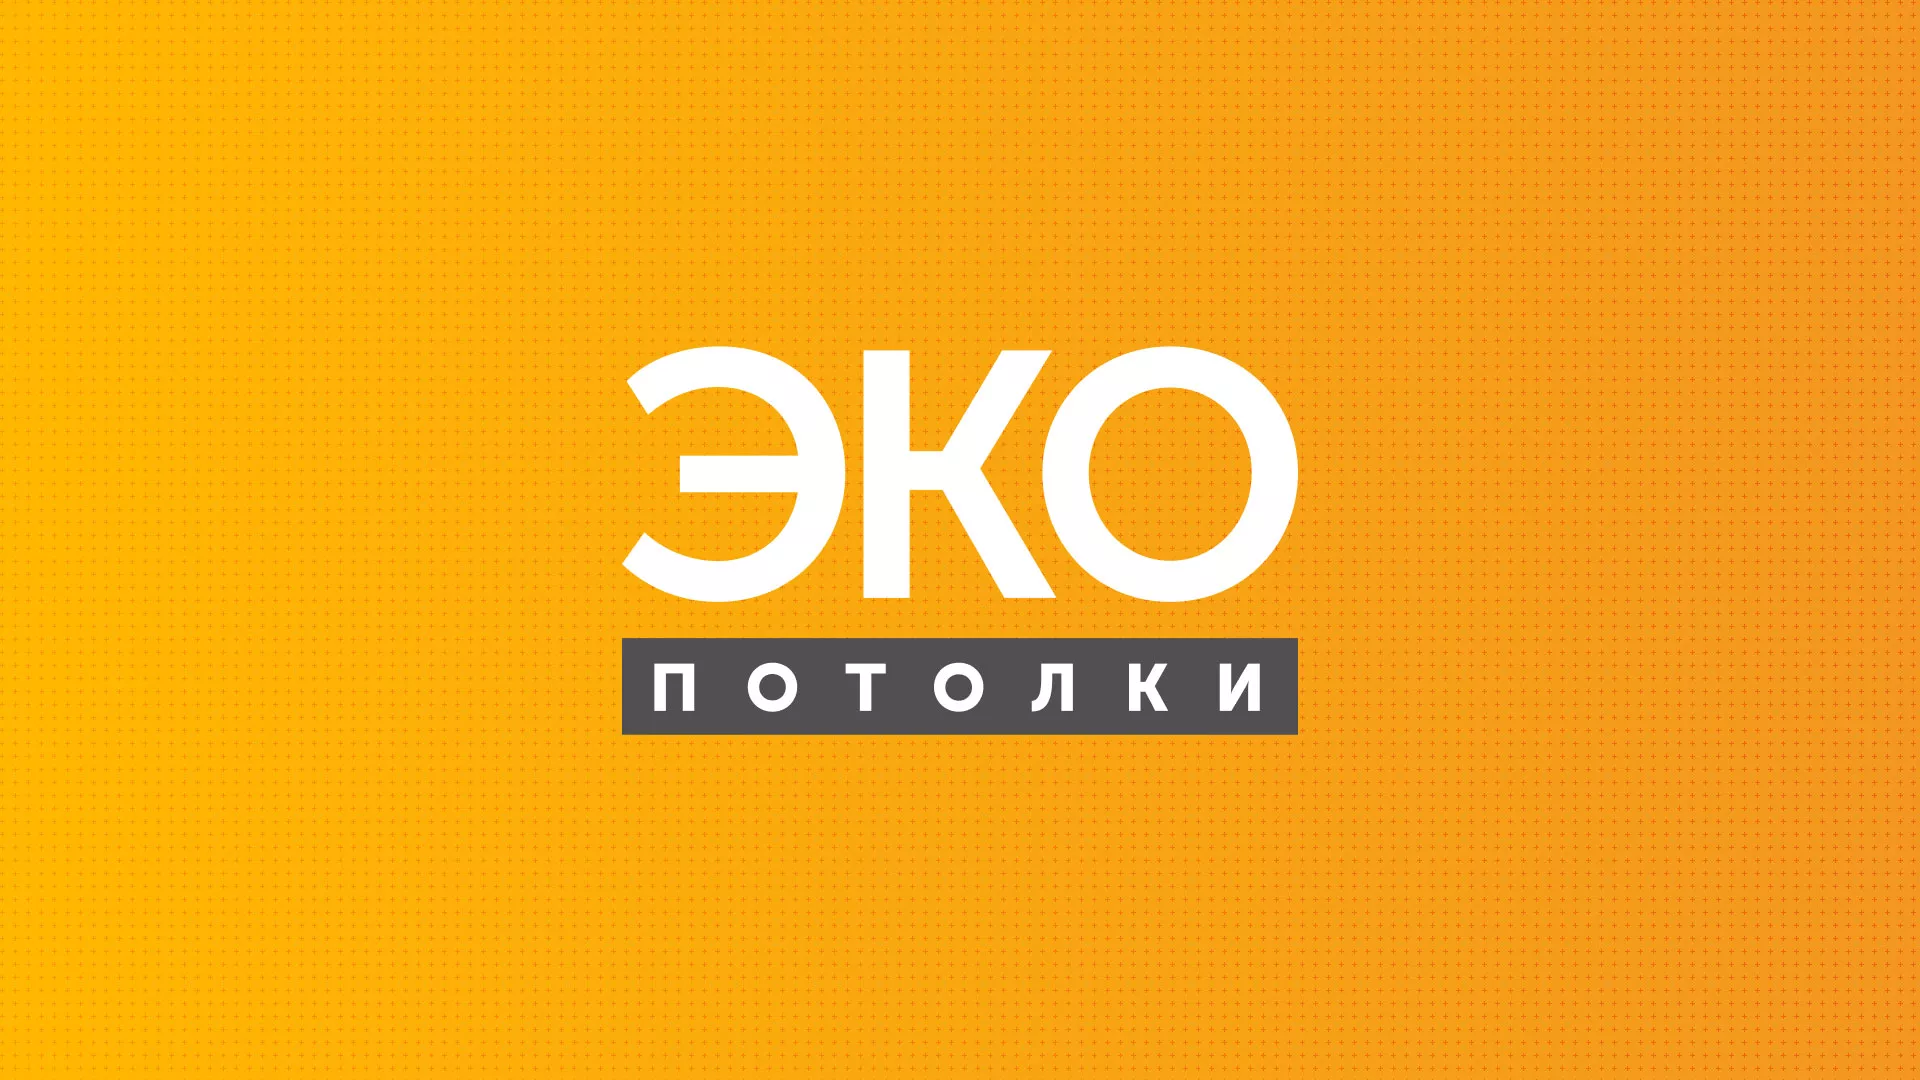 Разработка сайта по натяжным потолкам «Эко Потолки» в Жирновске